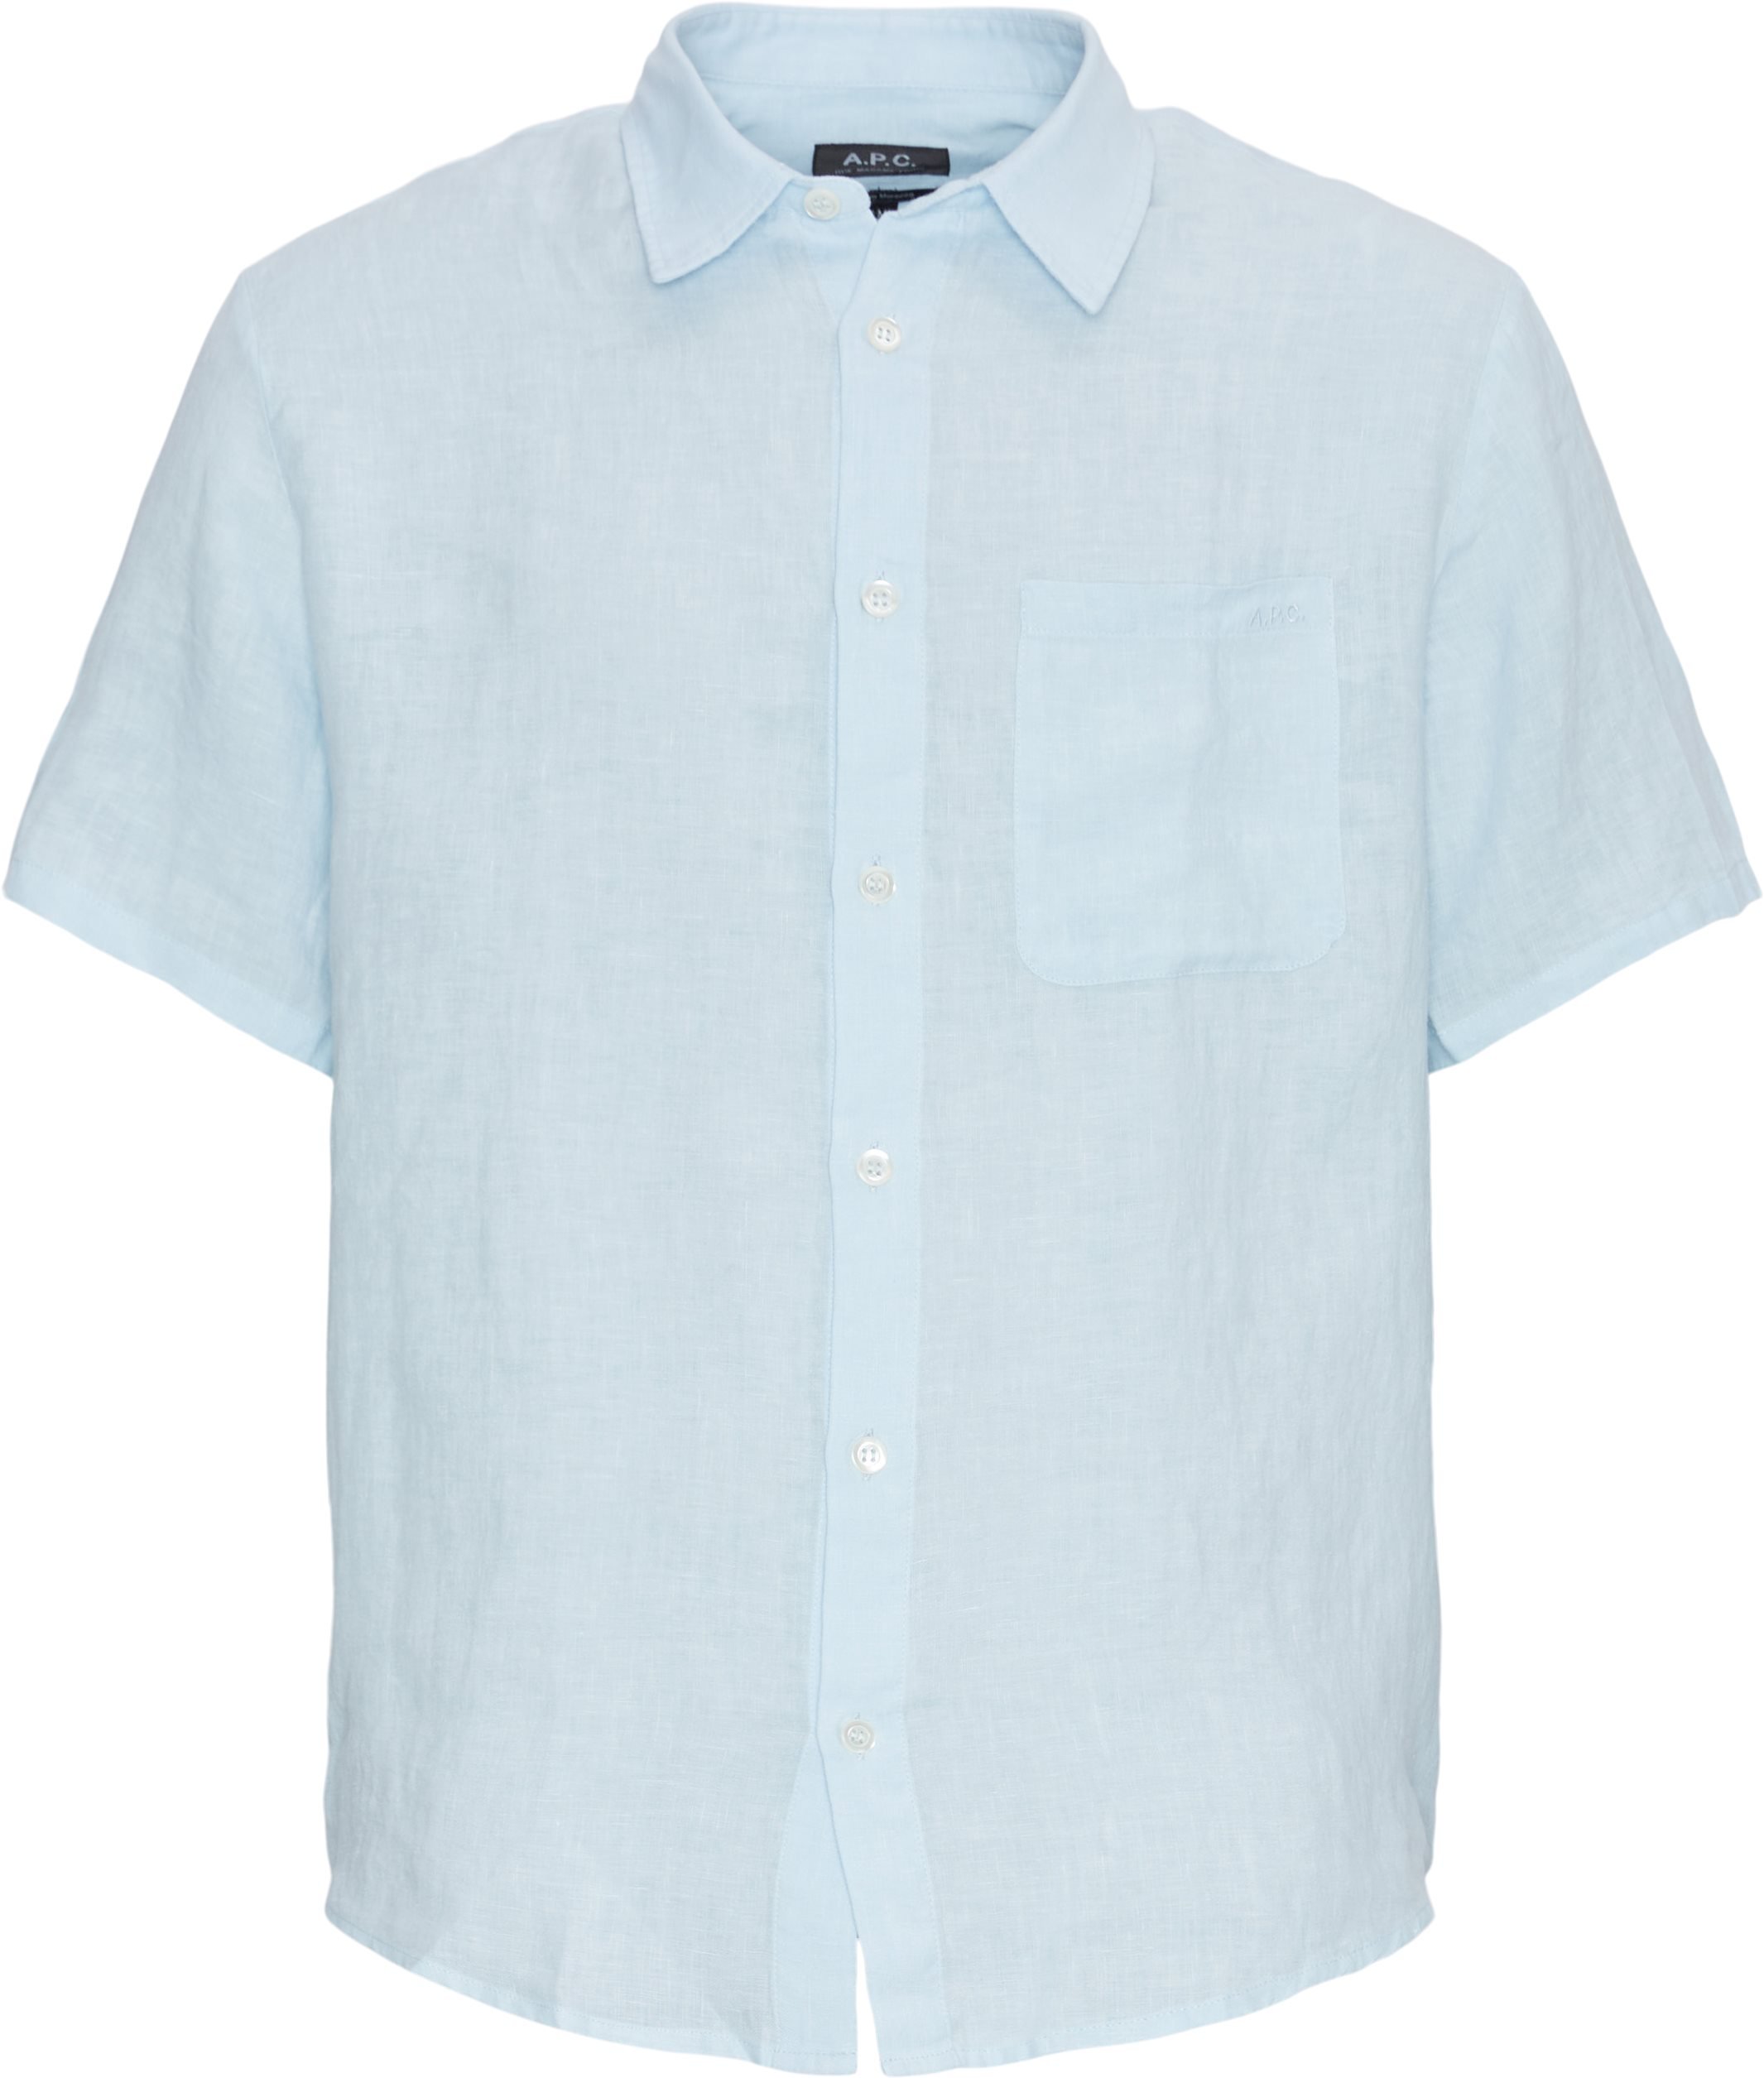 A.P.C. Kortärmade skjortor LIAEK-H12551 Blå